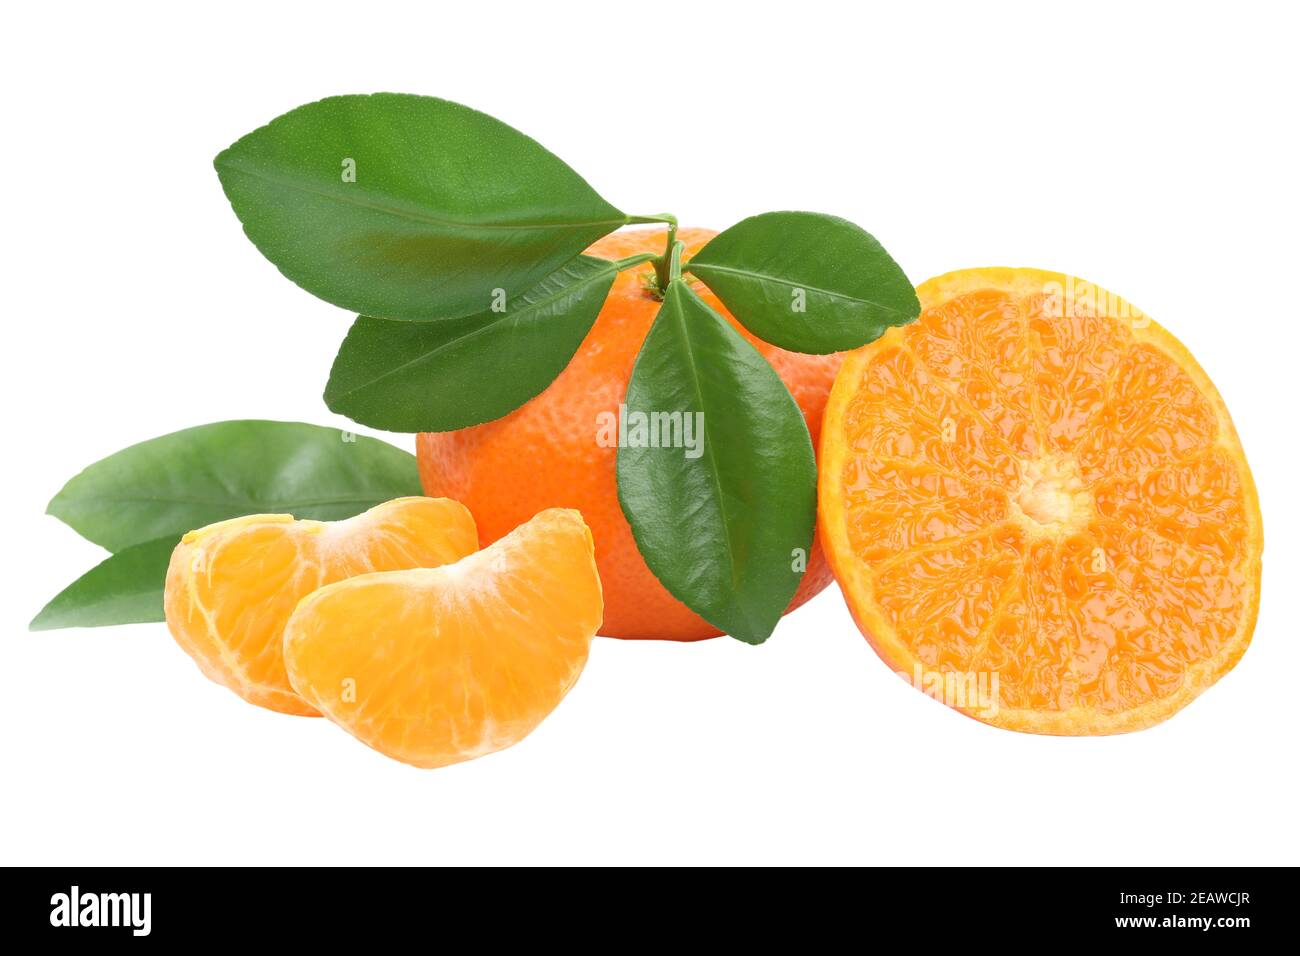 Mandarino mandarino arancio mandarini frutti vegani tangerini isolati Foto Stock